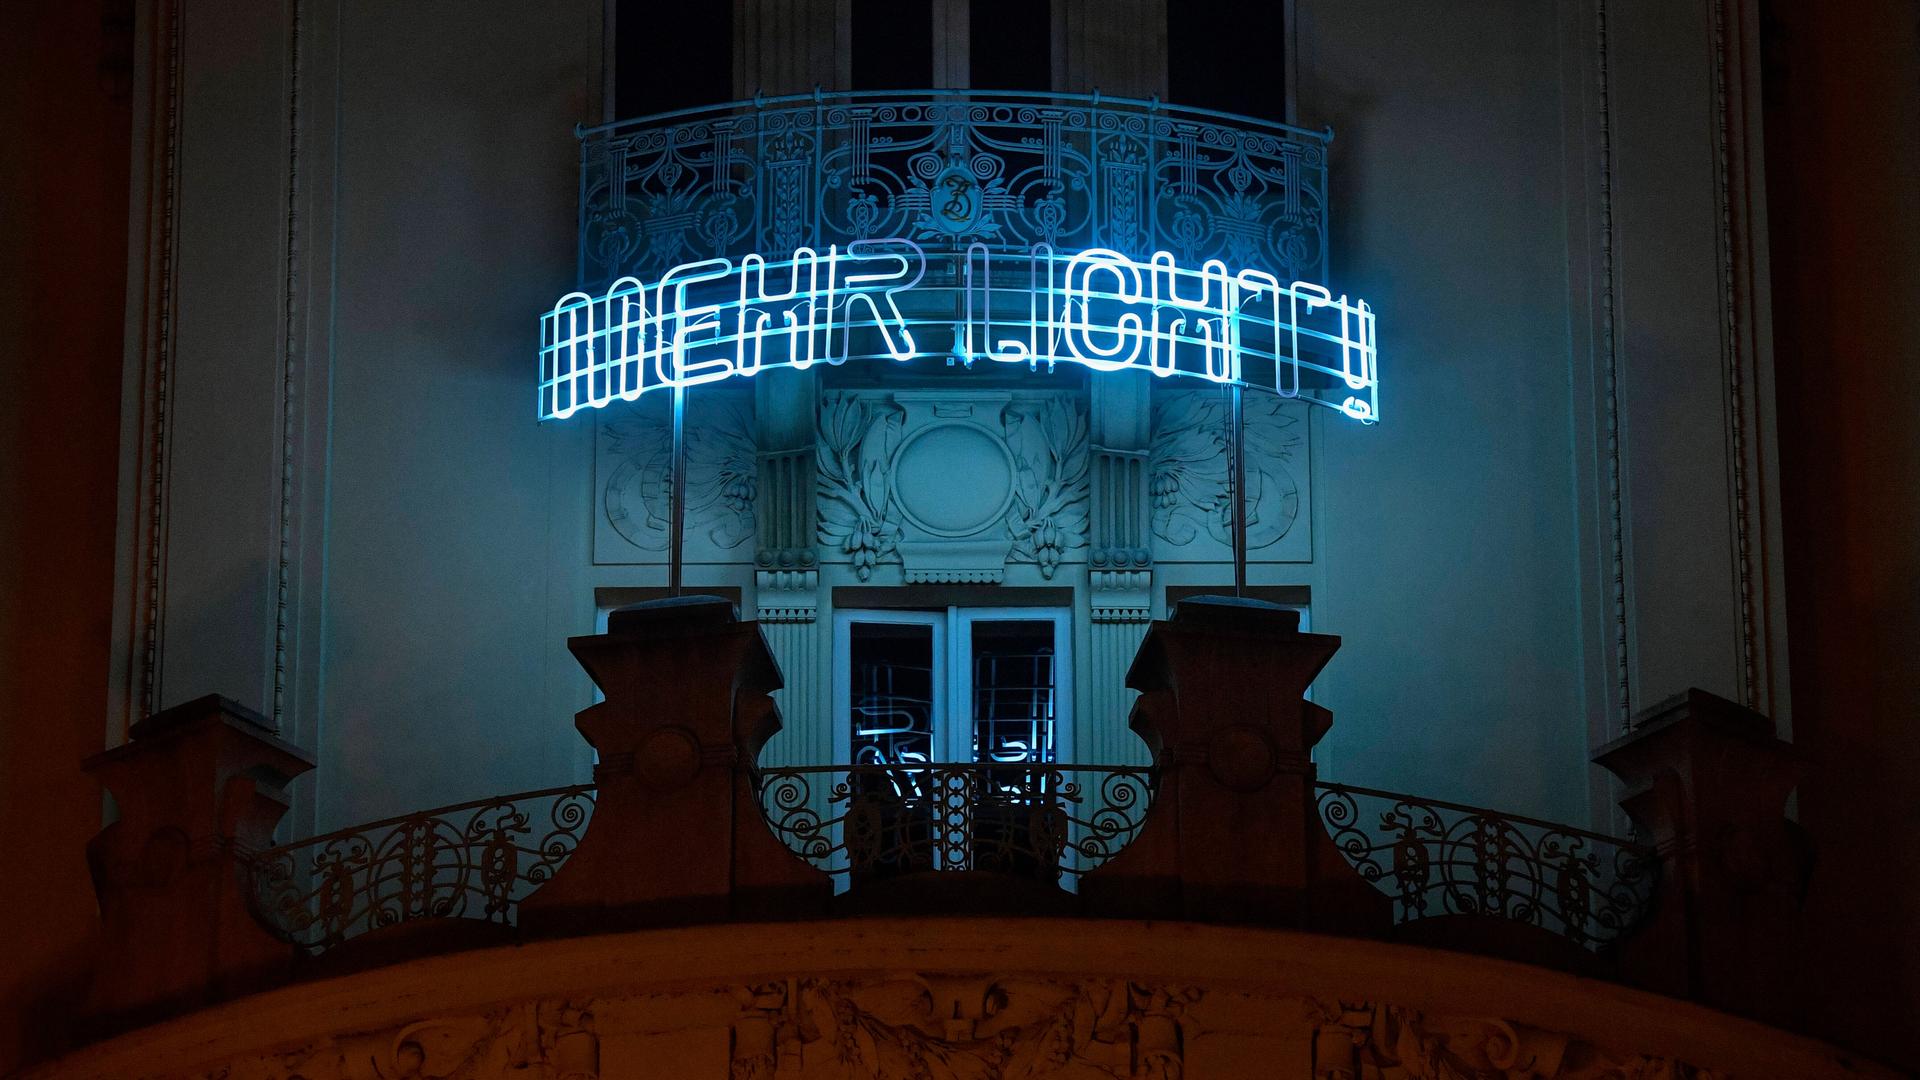 "Mehr Licht": Der Legende nach Goethes letzte Worte bevor er starb, stehen als Lichtinstallation am Gebäude des Goethe Instituts in Prag, 2020.